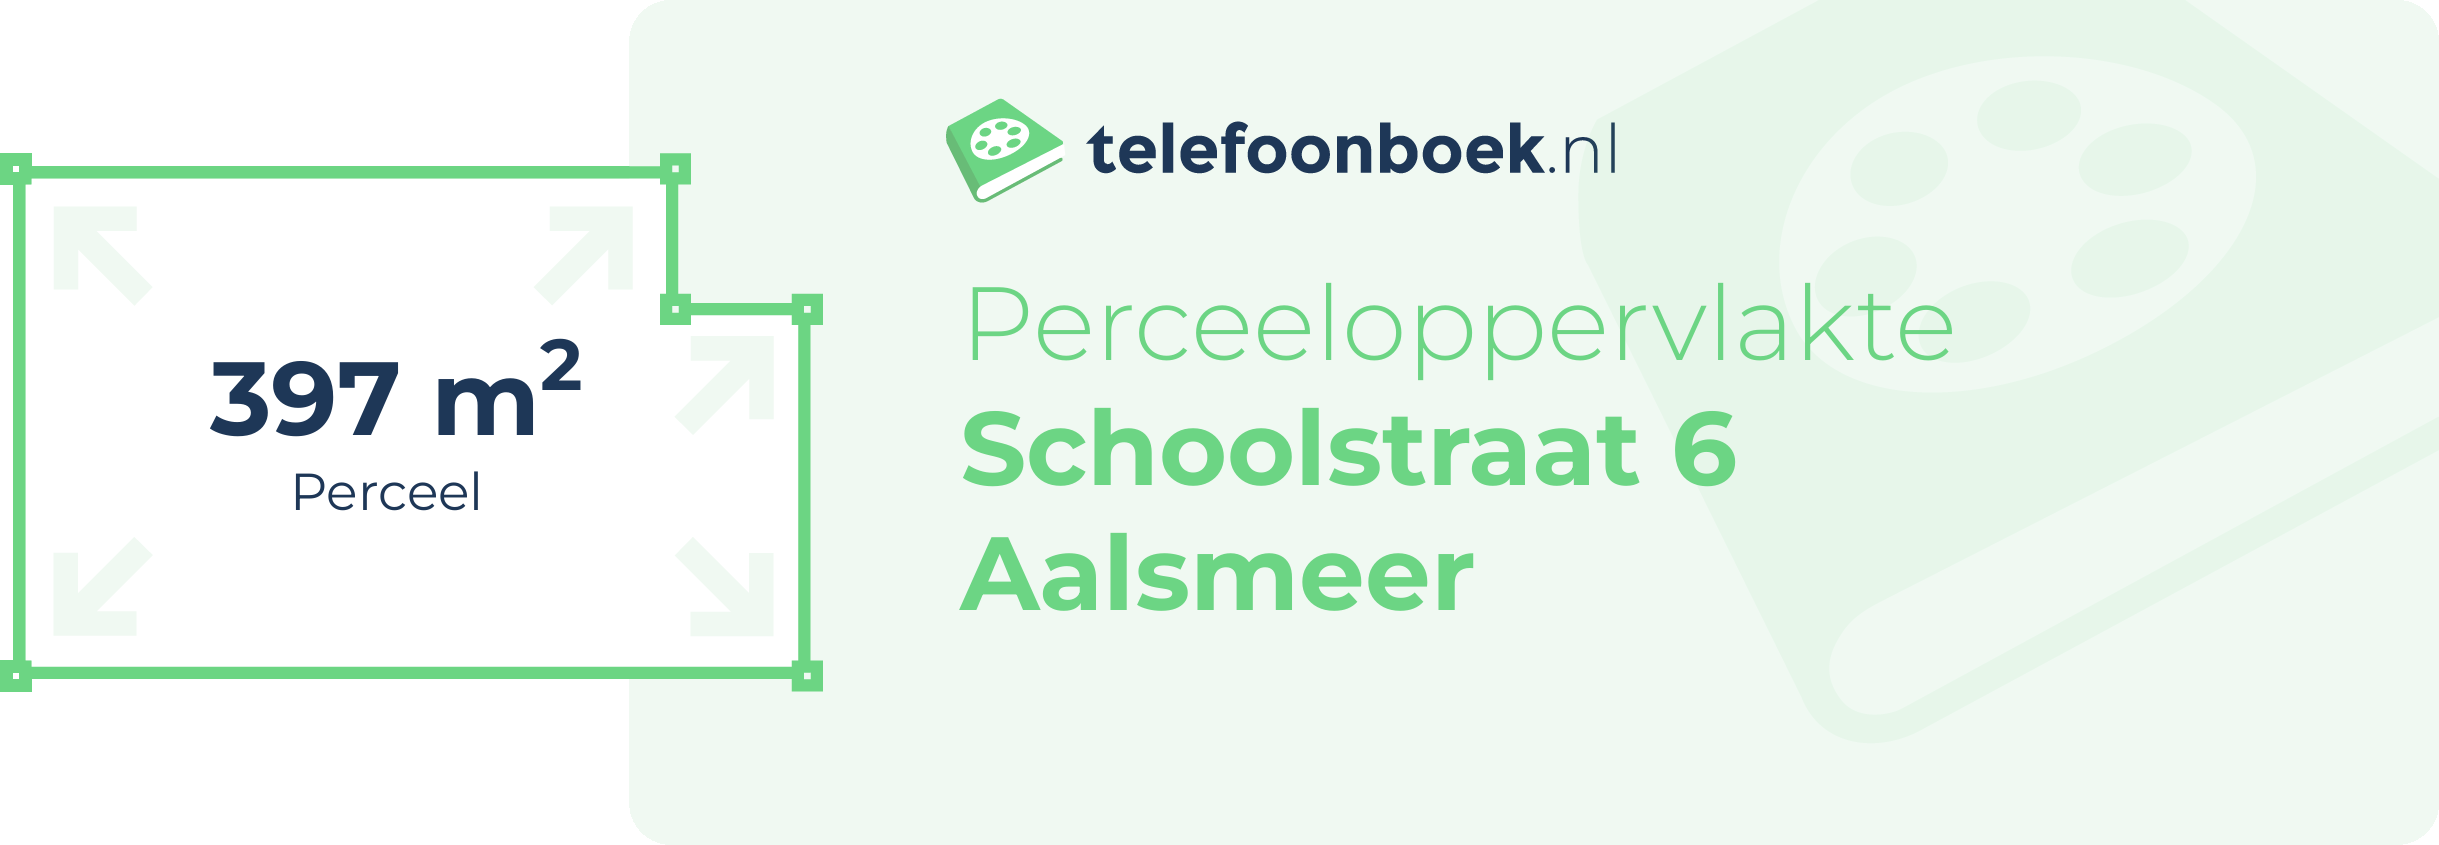 Perceeloppervlakte Schoolstraat 6 Aalsmeer